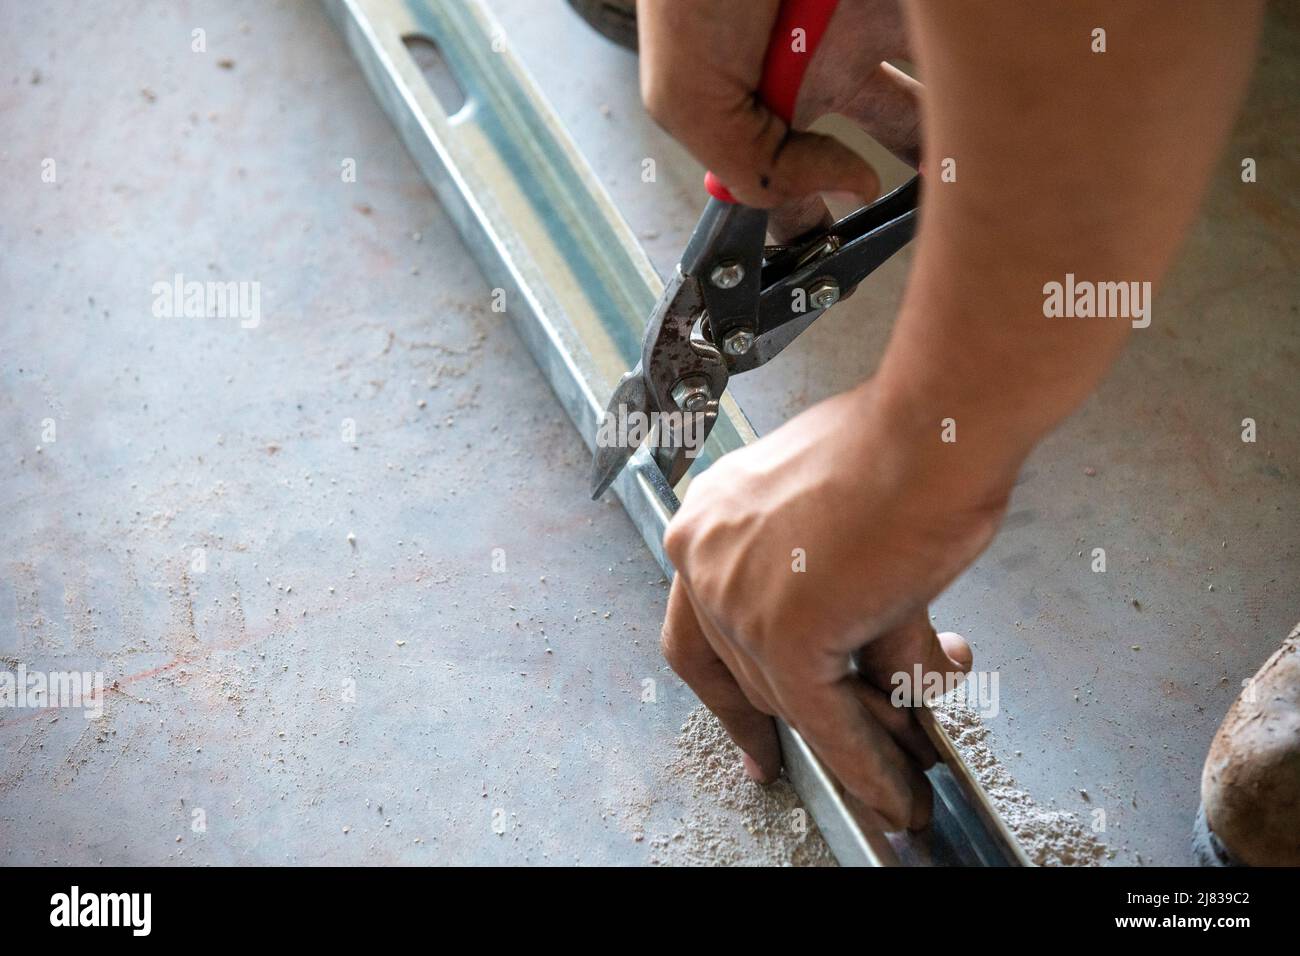 Ein Bauarbeiter/Rahmer schneidet einen verzinkten Stahlstab oder eine verzinkte Stahlstrebe mit einer Schneidzange für eine präzise Installation. Stockfoto